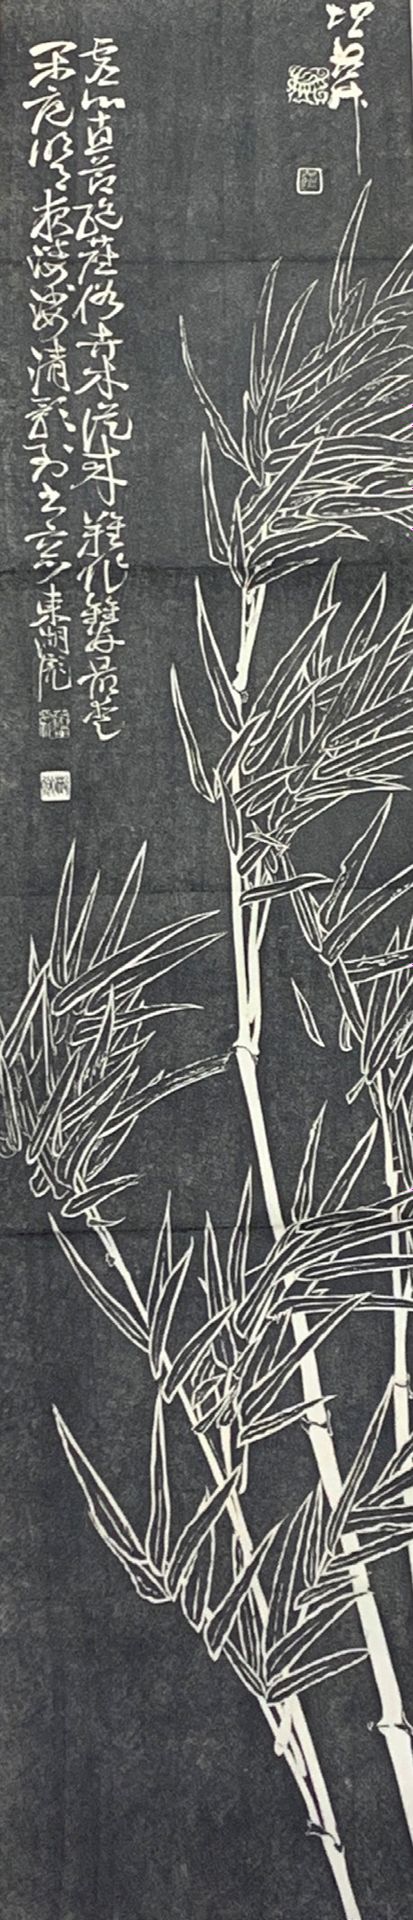 JAPON Kakemono-Druck.
Schwarzer Druck auf Papier, der drei Bambusbäume mit Insch&hellip;